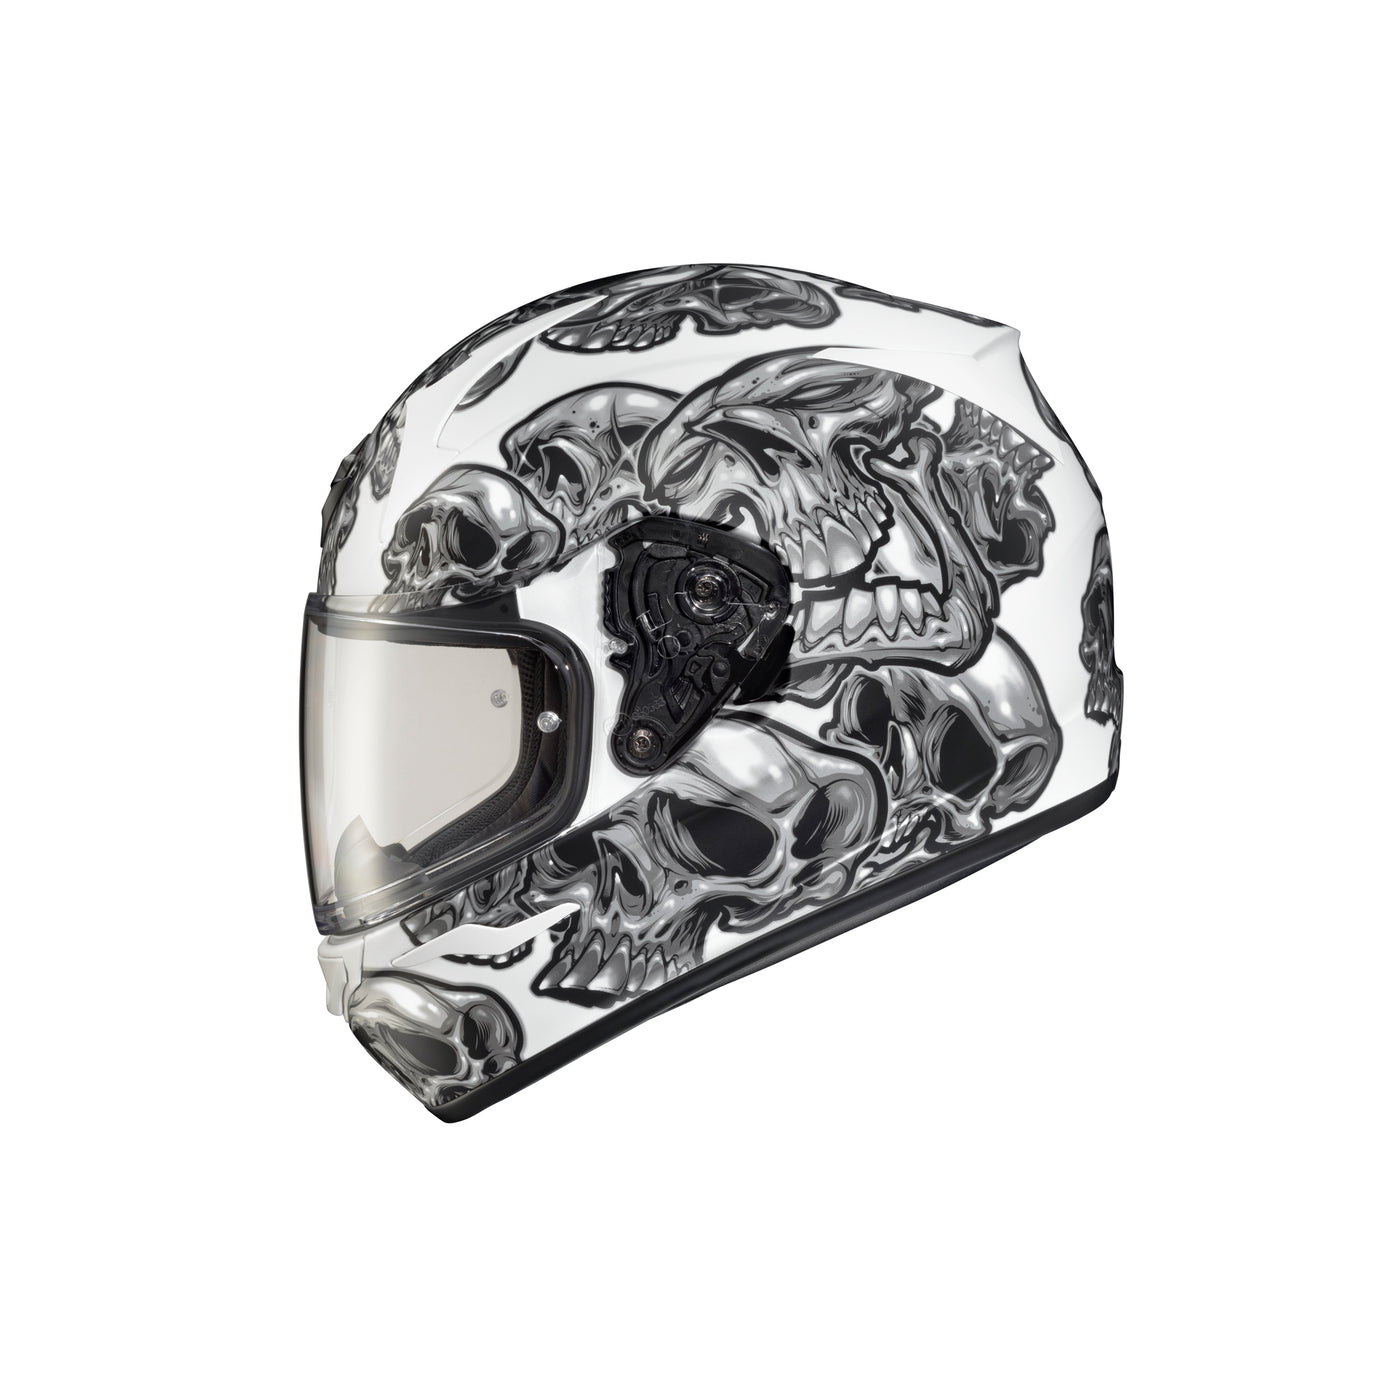 SCORPION EXO EXO-R320 Skull-e Helmet